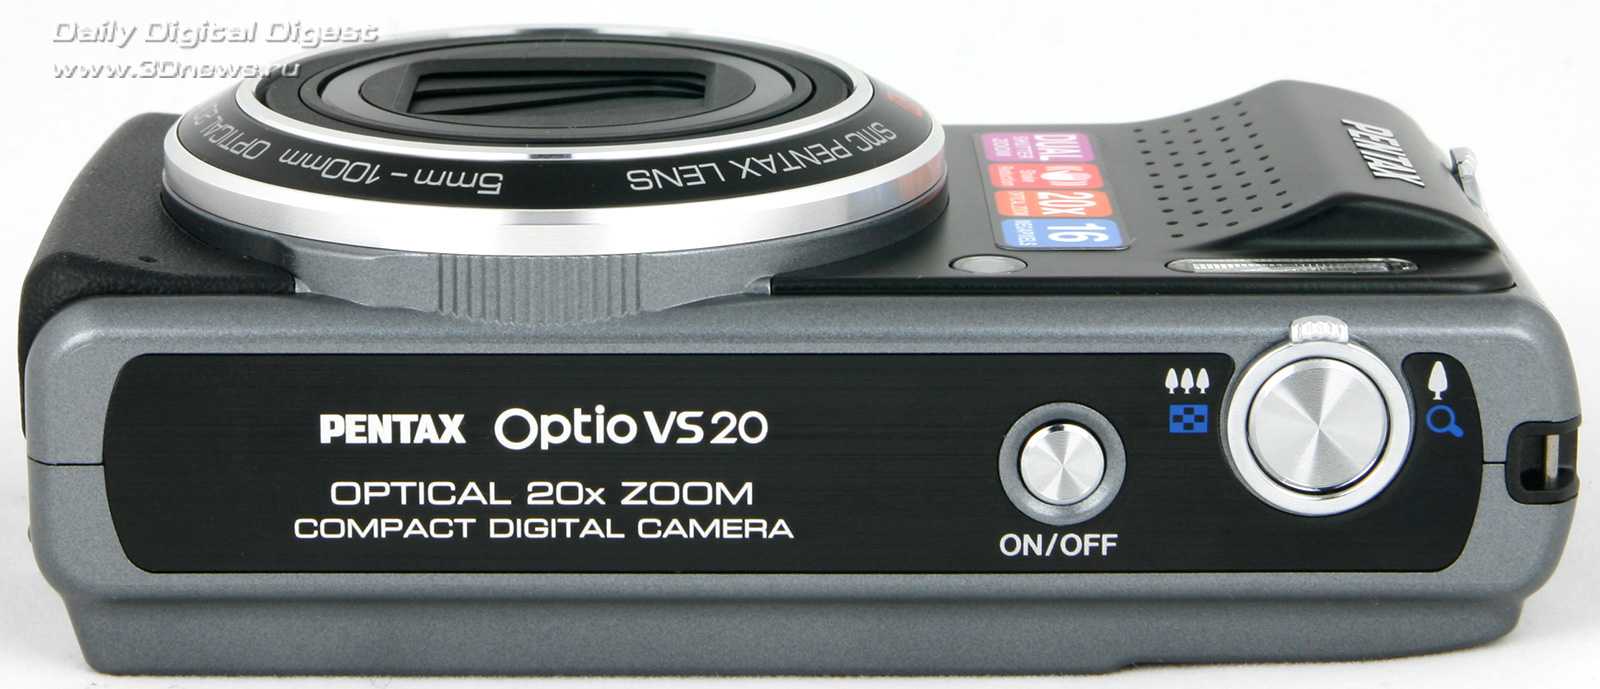 Pentax optio m20 - купить , скидки, цена, отзывы, обзор, характеристики - фотоаппараты цифровые